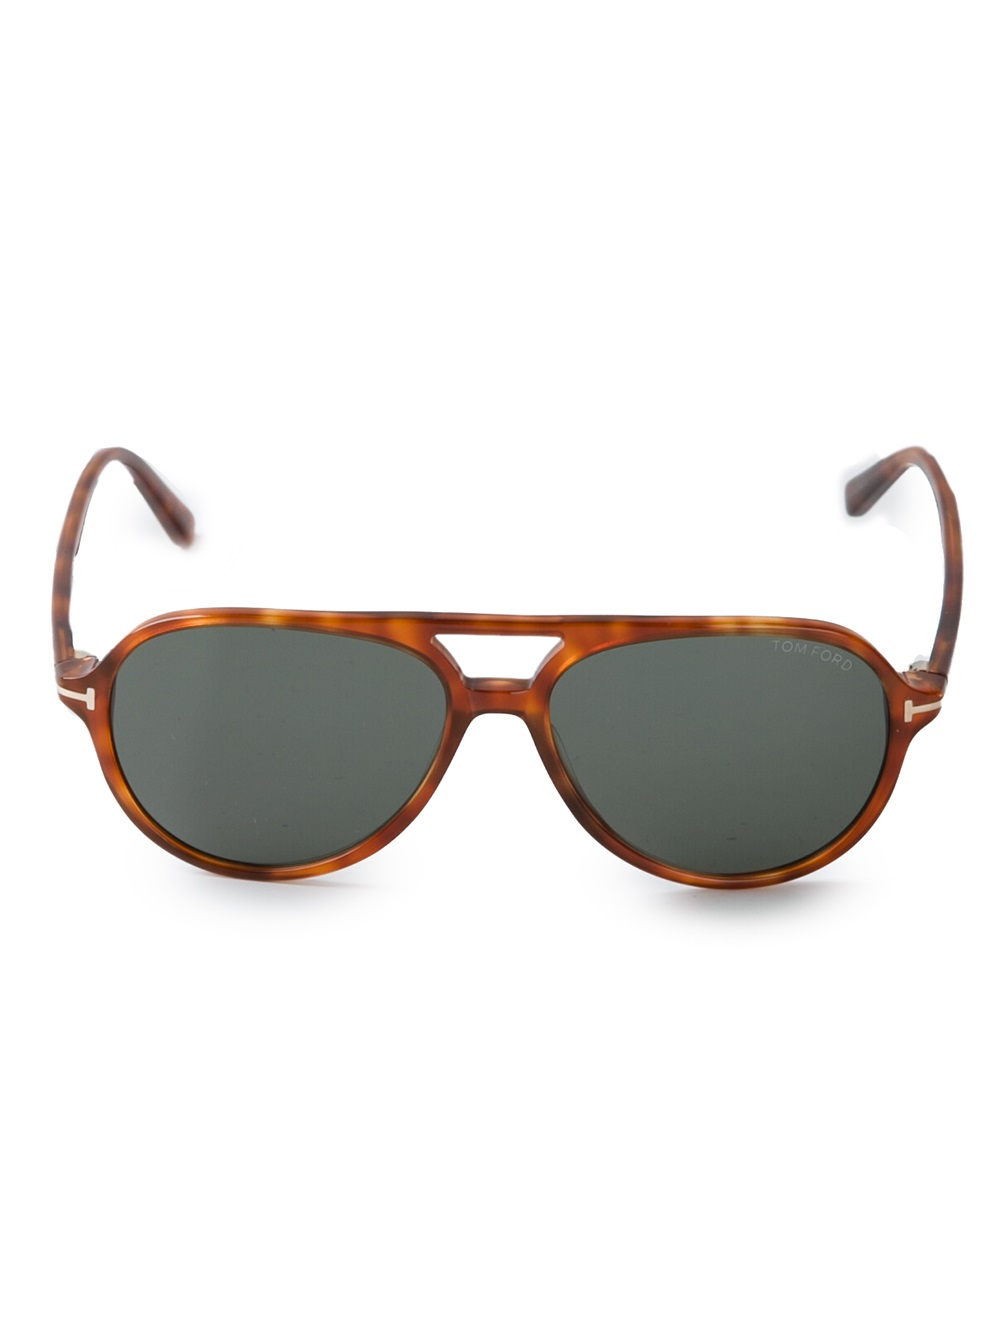 Tom Ford Tortoise Shell Sunglasses In Brown For Men Lyst